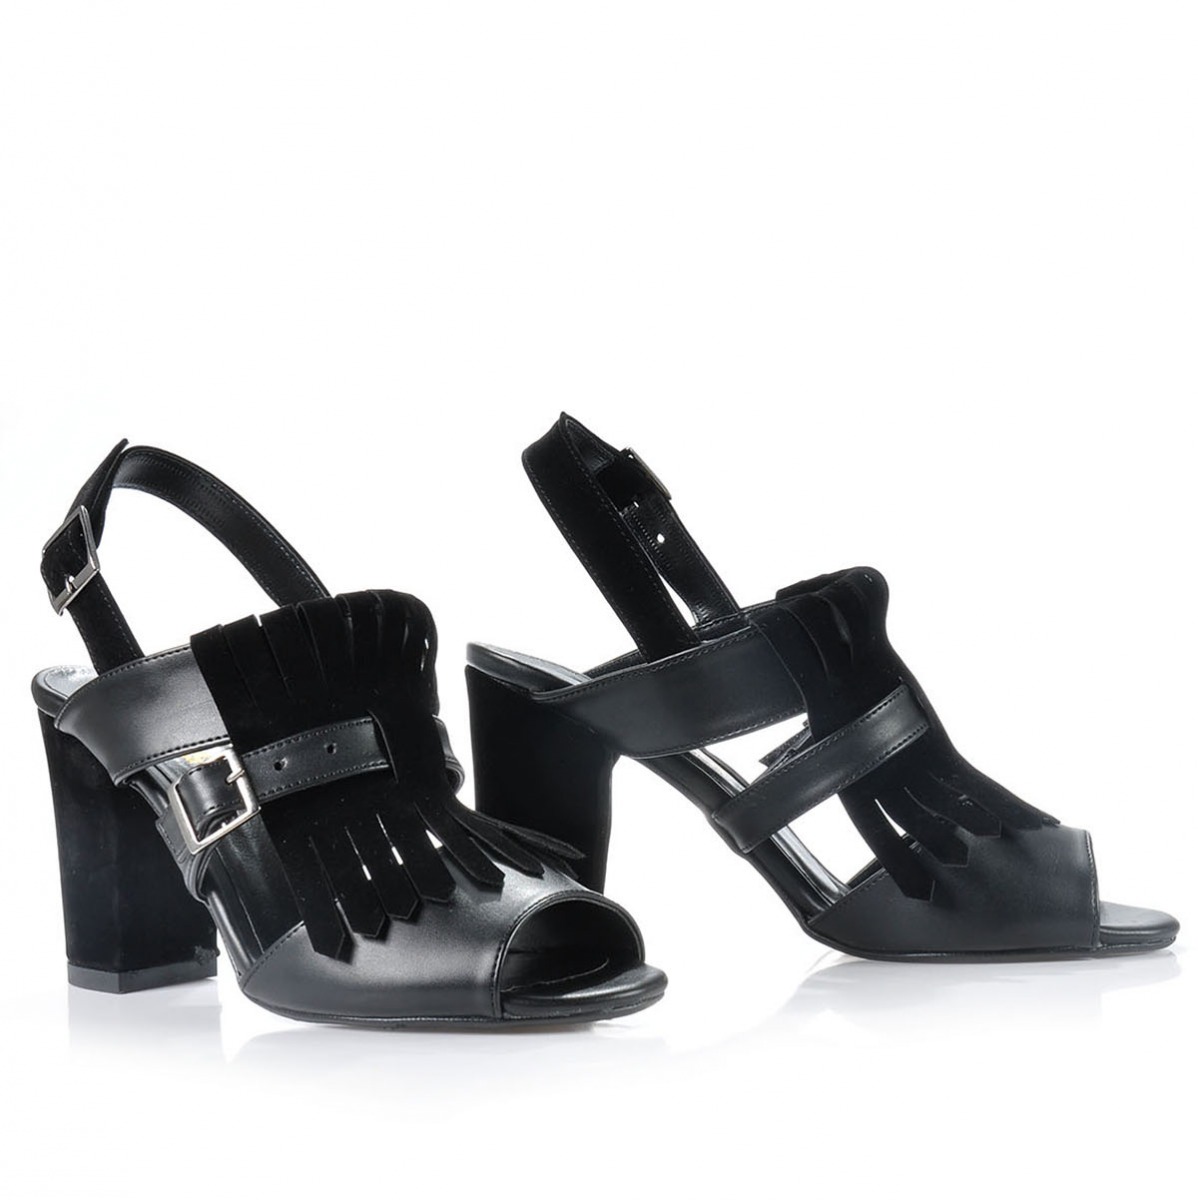 Flo Kadın  Siyah Klasik Topuklu Ayakkabı VZN-159Y. 5